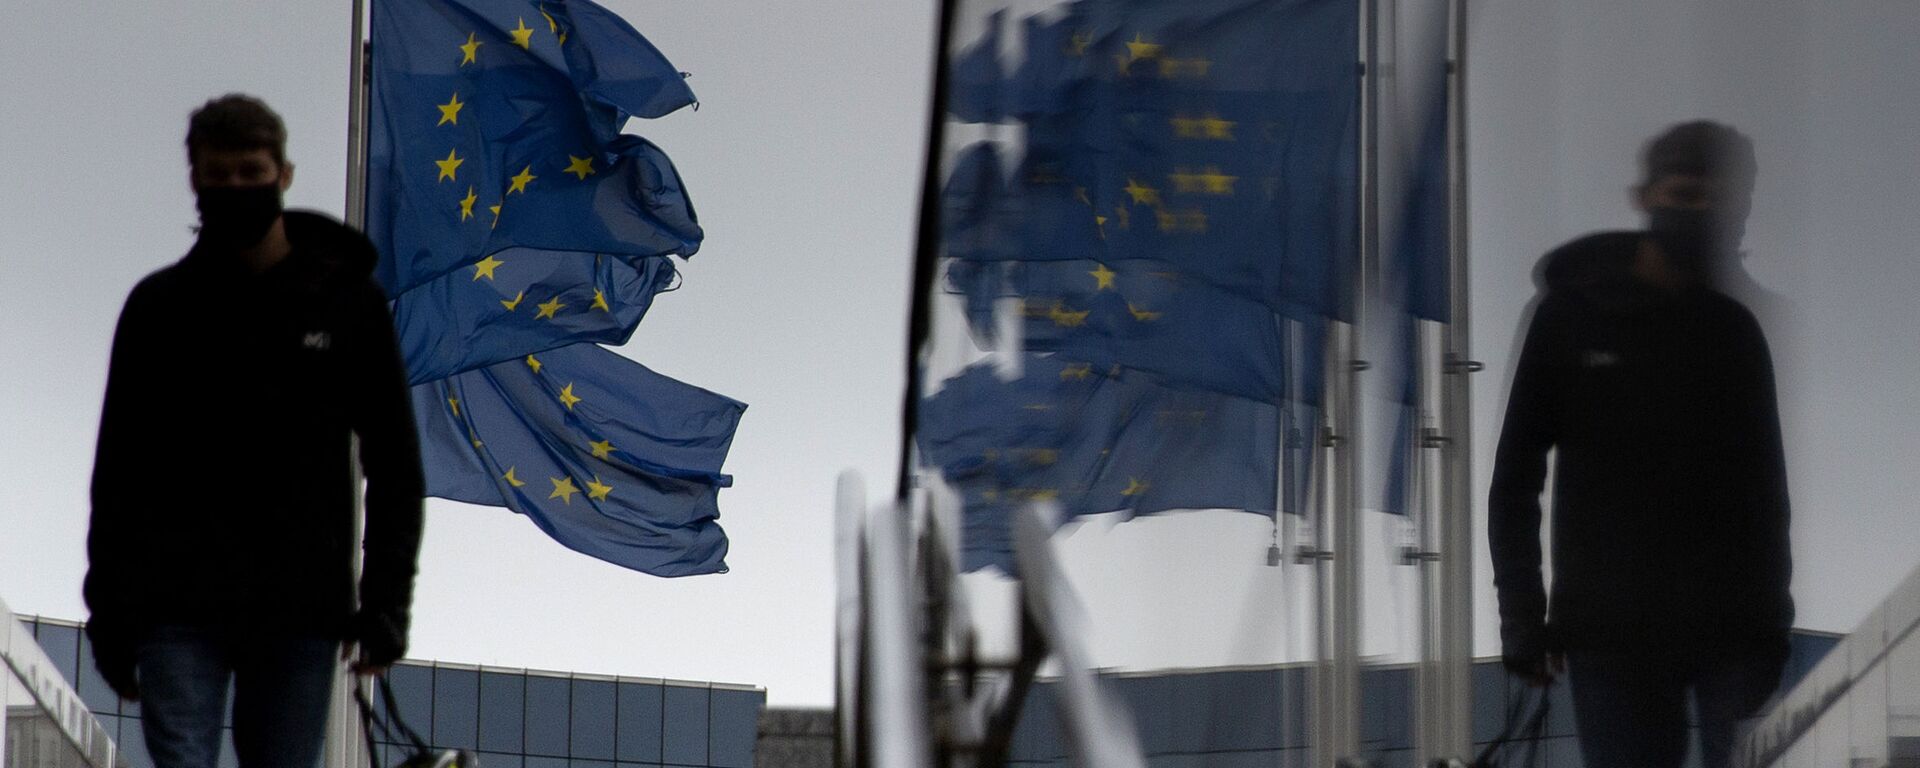 Мужчина идет мимо флагов ЕС у штаб-квартиры ЕС в Брюсселе - Sputnik Абхазия, 1920, 10.12.2020